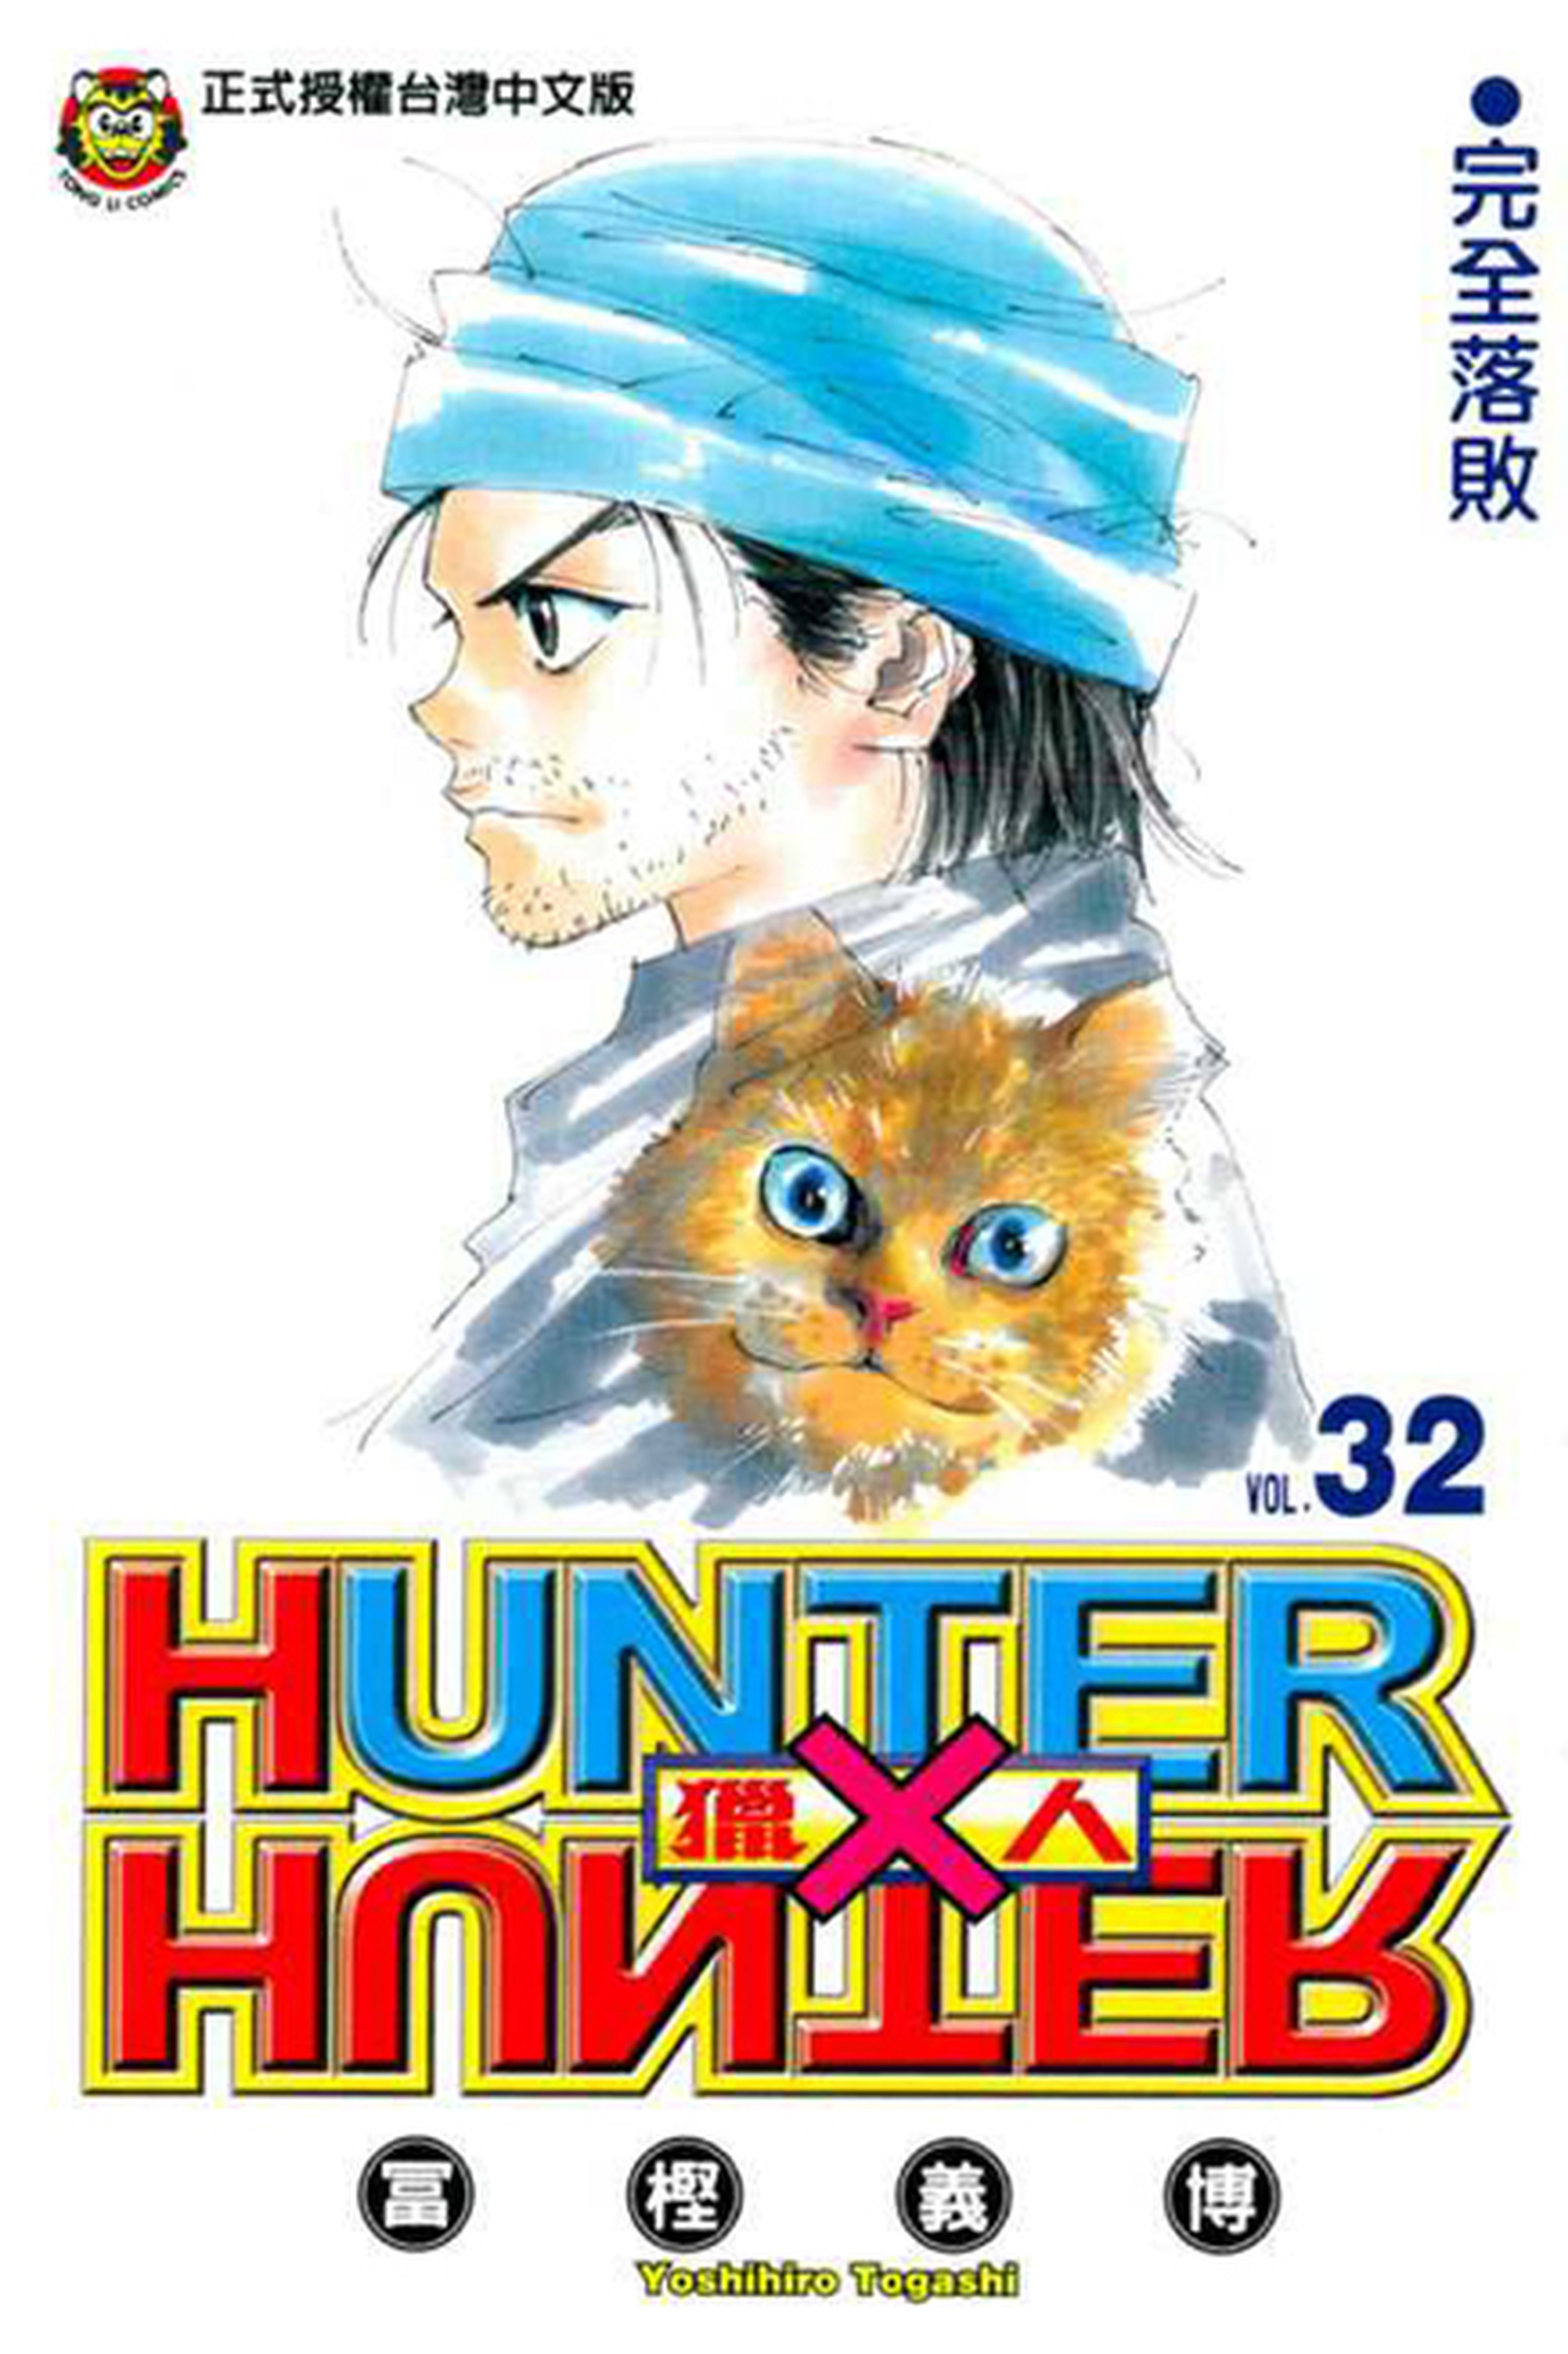 Hunter x Hunter - El tomo 33 saldrá en junio... ¡Después de 4 años!